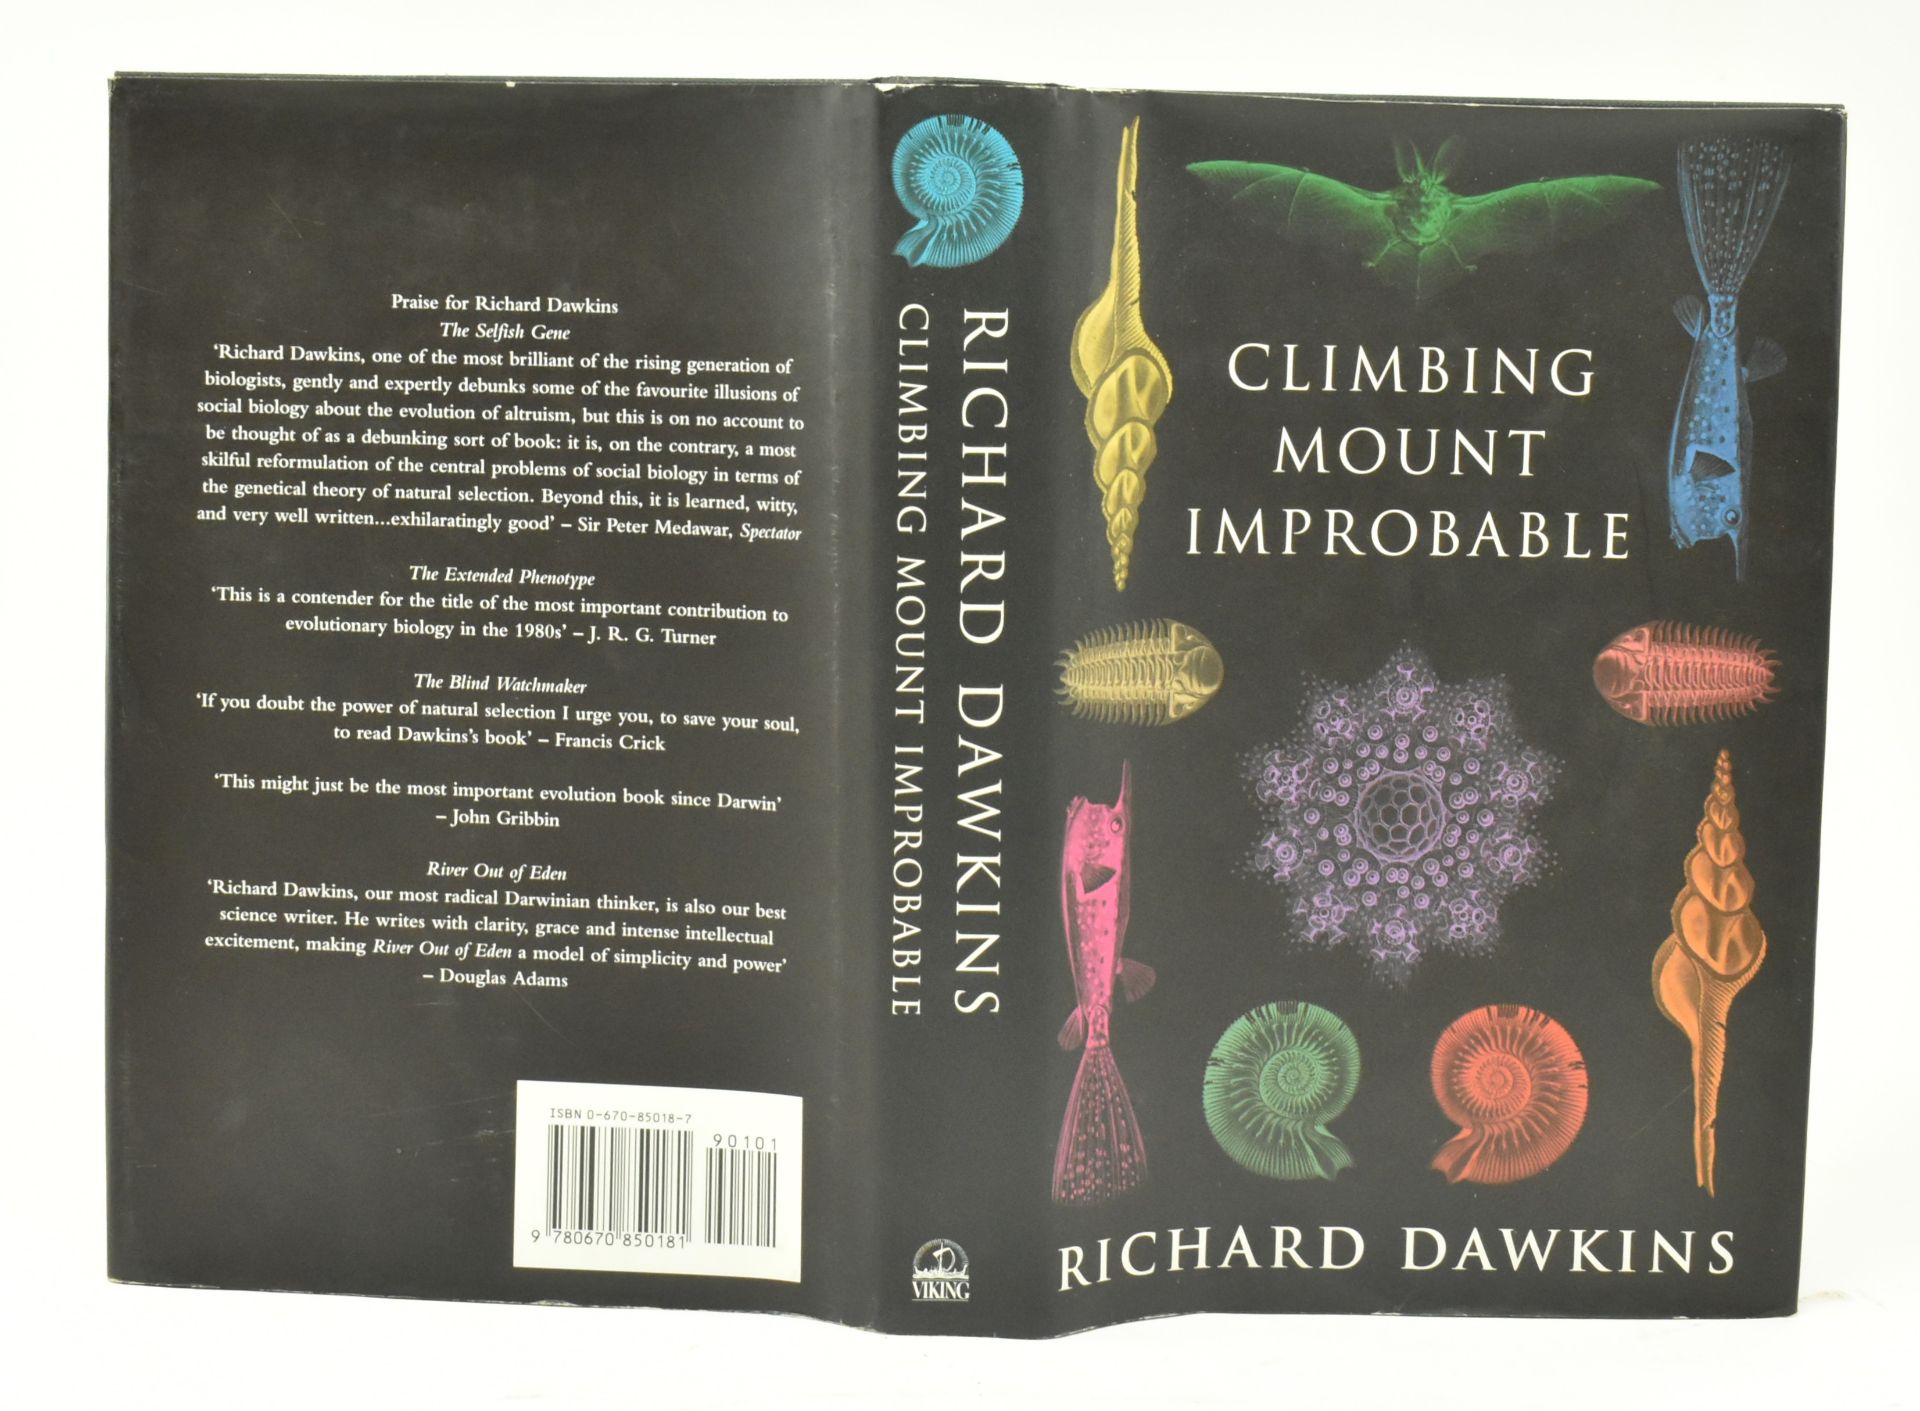 DAWKINS, RICHARD - SIGNED 1ST ED CLIMBING MOUNT IMPROBABLE - Image 2 of 8